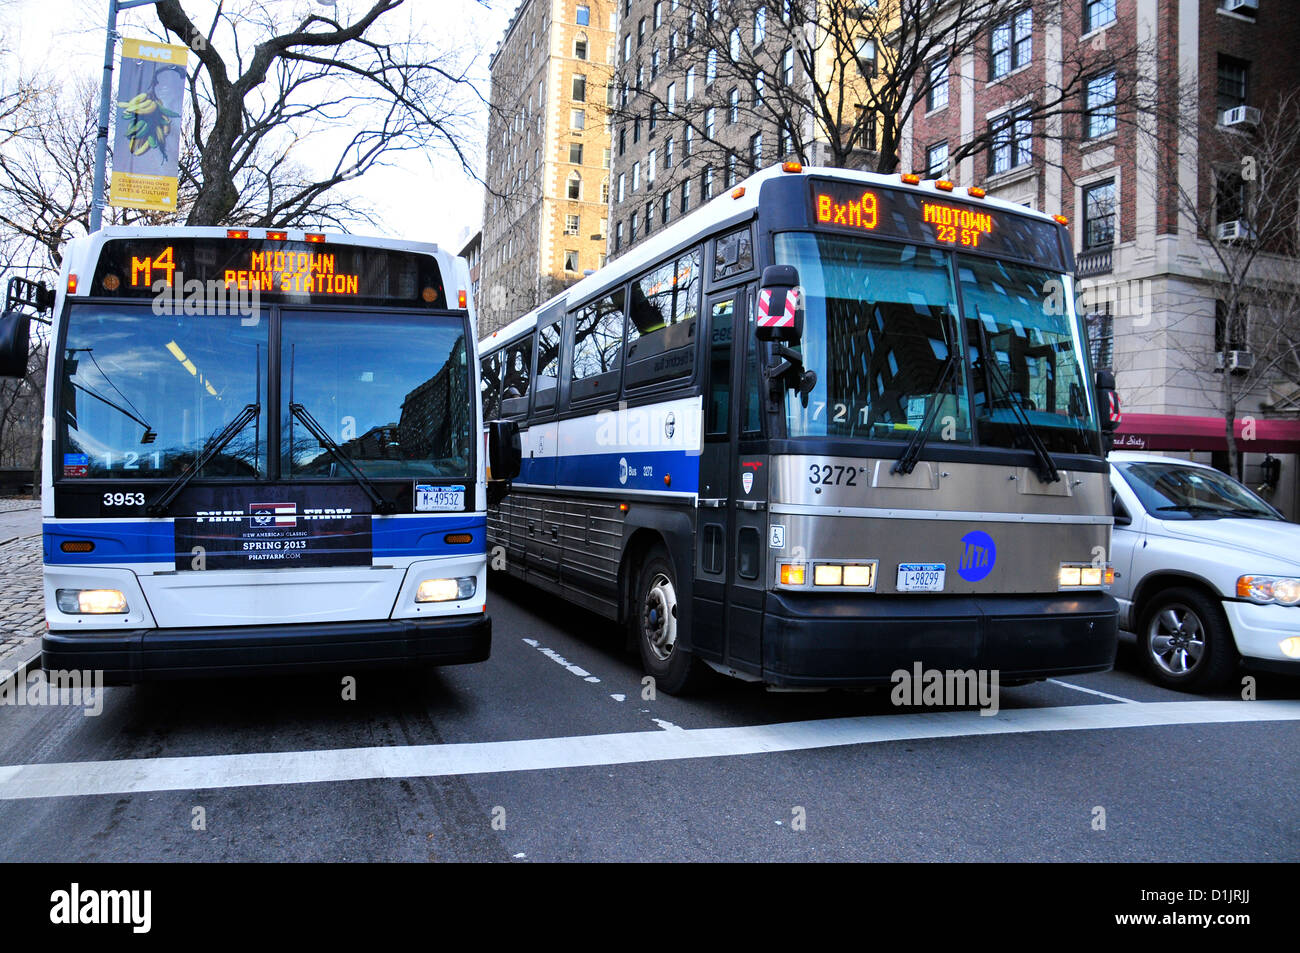 New York City öffentliche Verkehrsmittel M4 und BXM9 zum Ausdruck bringen MTA Bus, Manhattan, New York City, USA Stockfoto